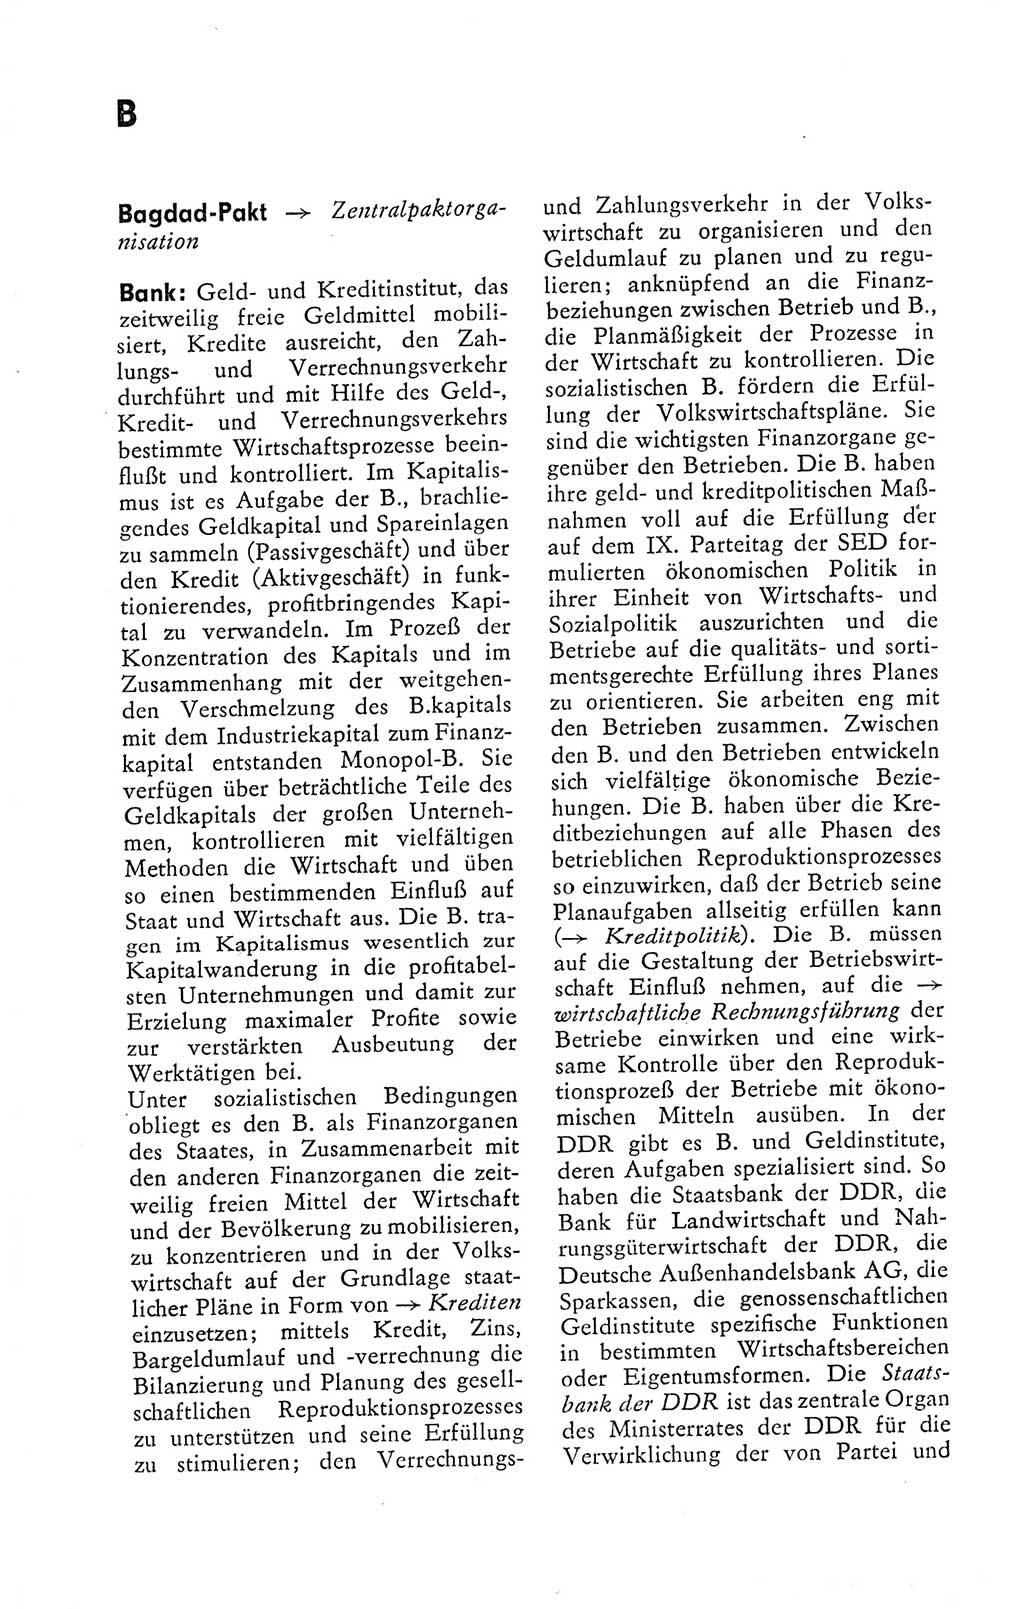 Kleines politisches Wörterbuch [Deutsche Demokratische Republik (DDR)] 1978, Seite 106 (Kl. pol. Wb. DDR 1978, S. 106)